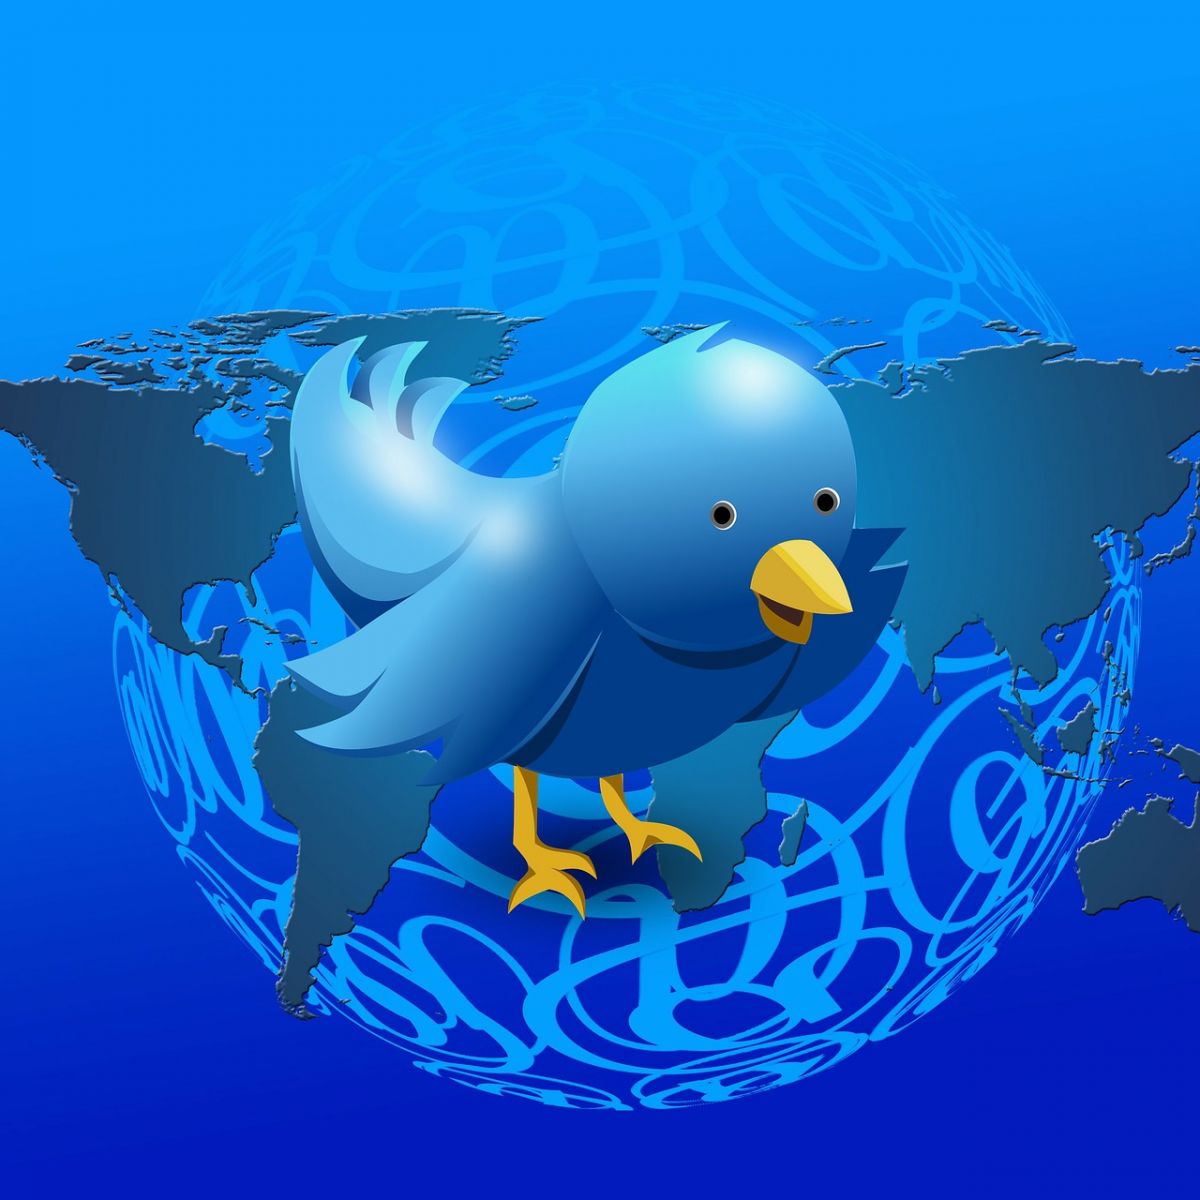 Grafiek van de dag: Twitter-aandeel stijgt door overnamegeruchten, gebruikers minder enthousiast